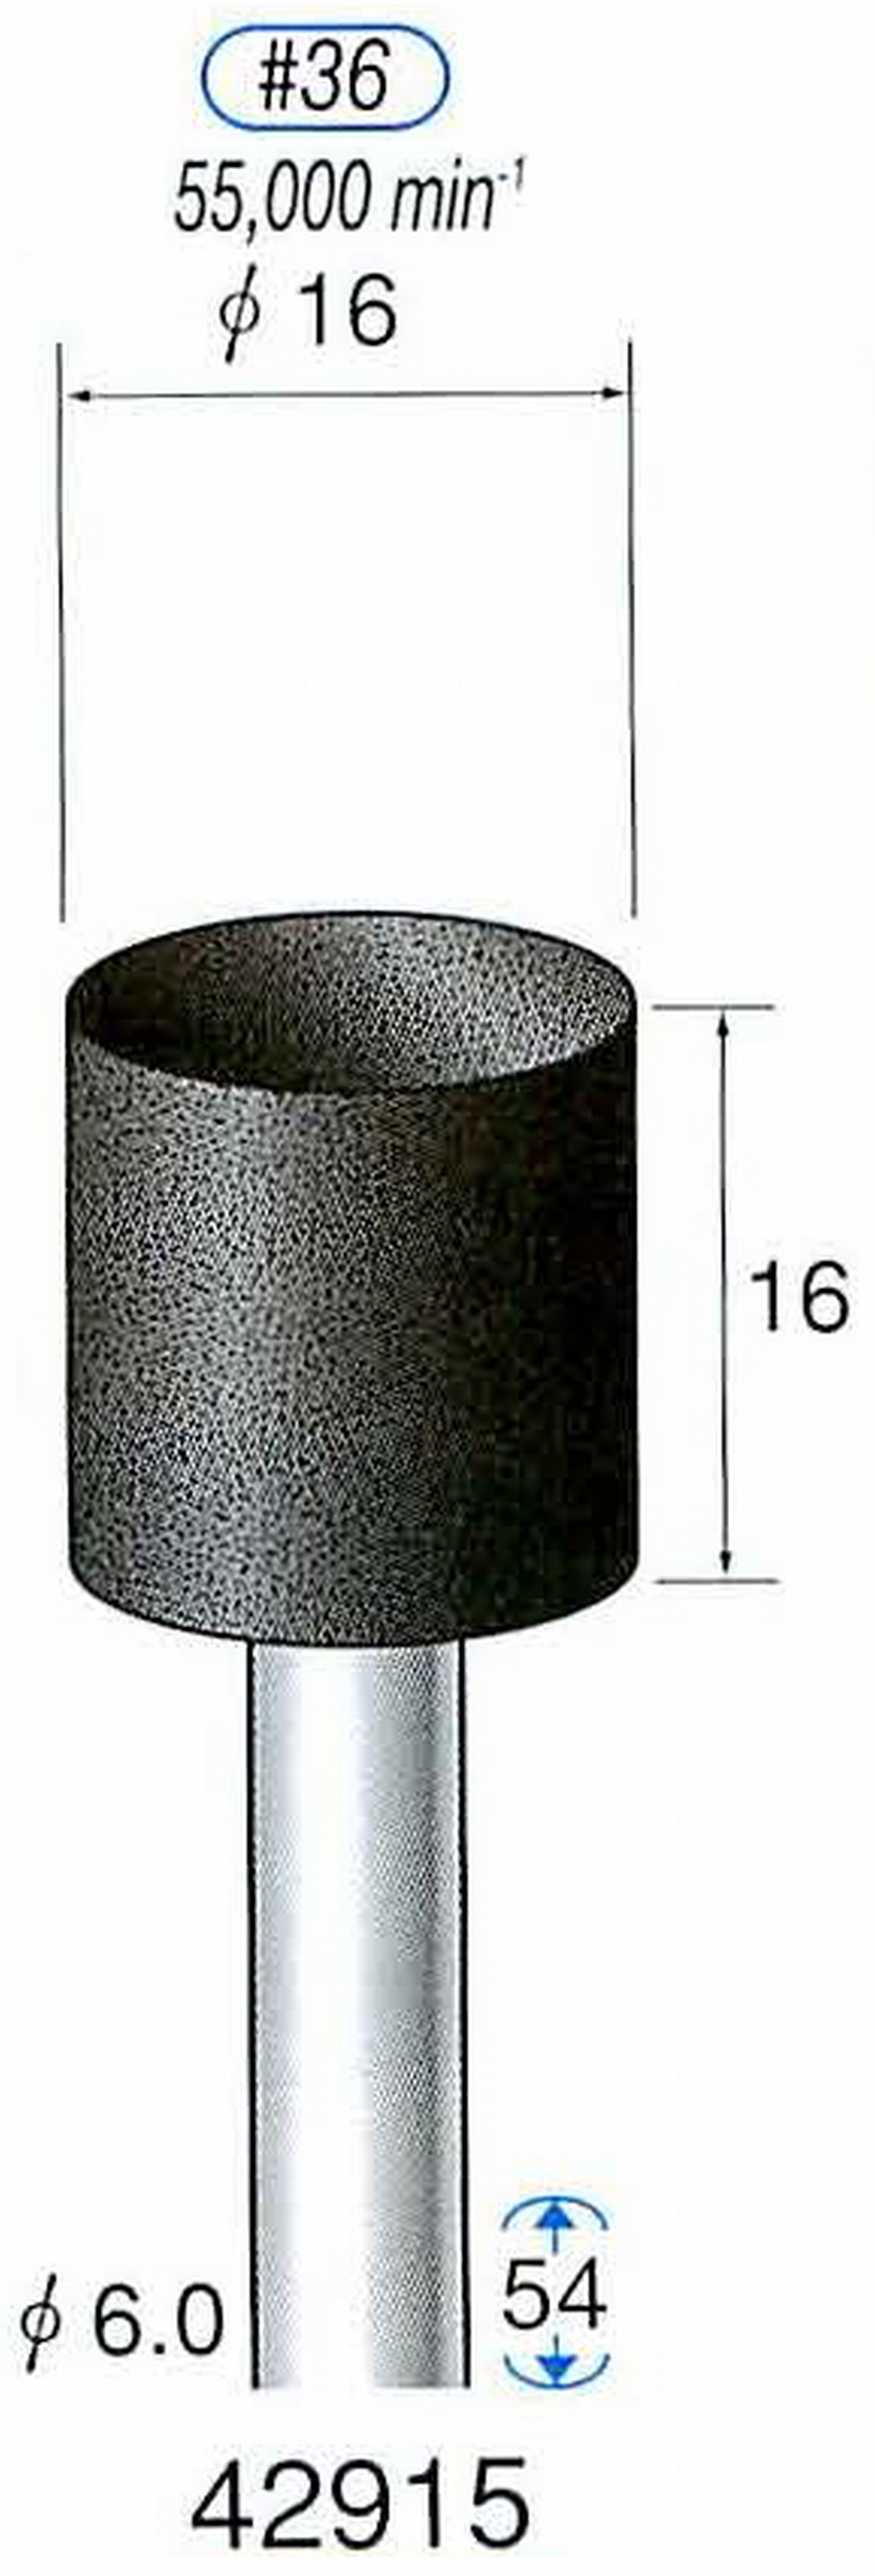 ナカニシ/NAKANISHI 軸付砥石(A砥粒) ブラック砥石 軸径(シャンク) φ6.0mm 42915